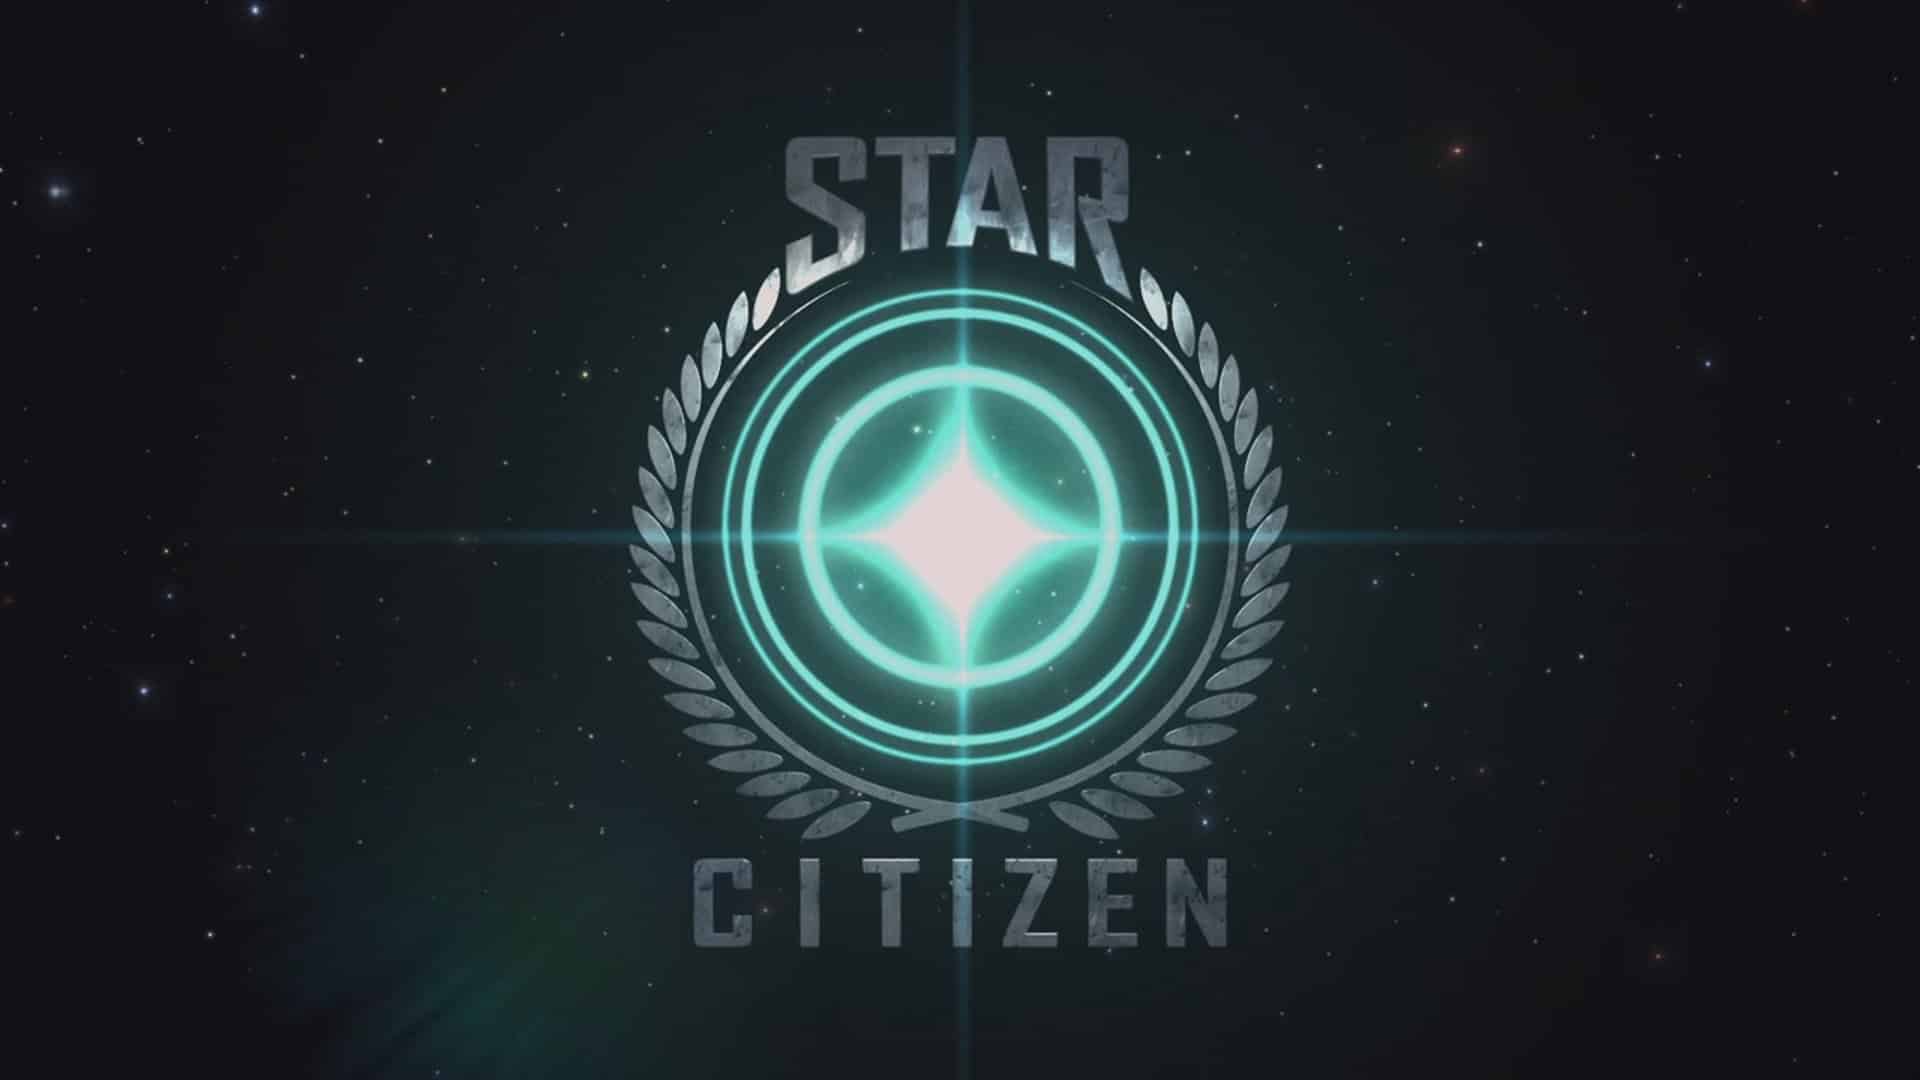 Star Citizen, disponibile la versione 2.4 dell'Alpha 2